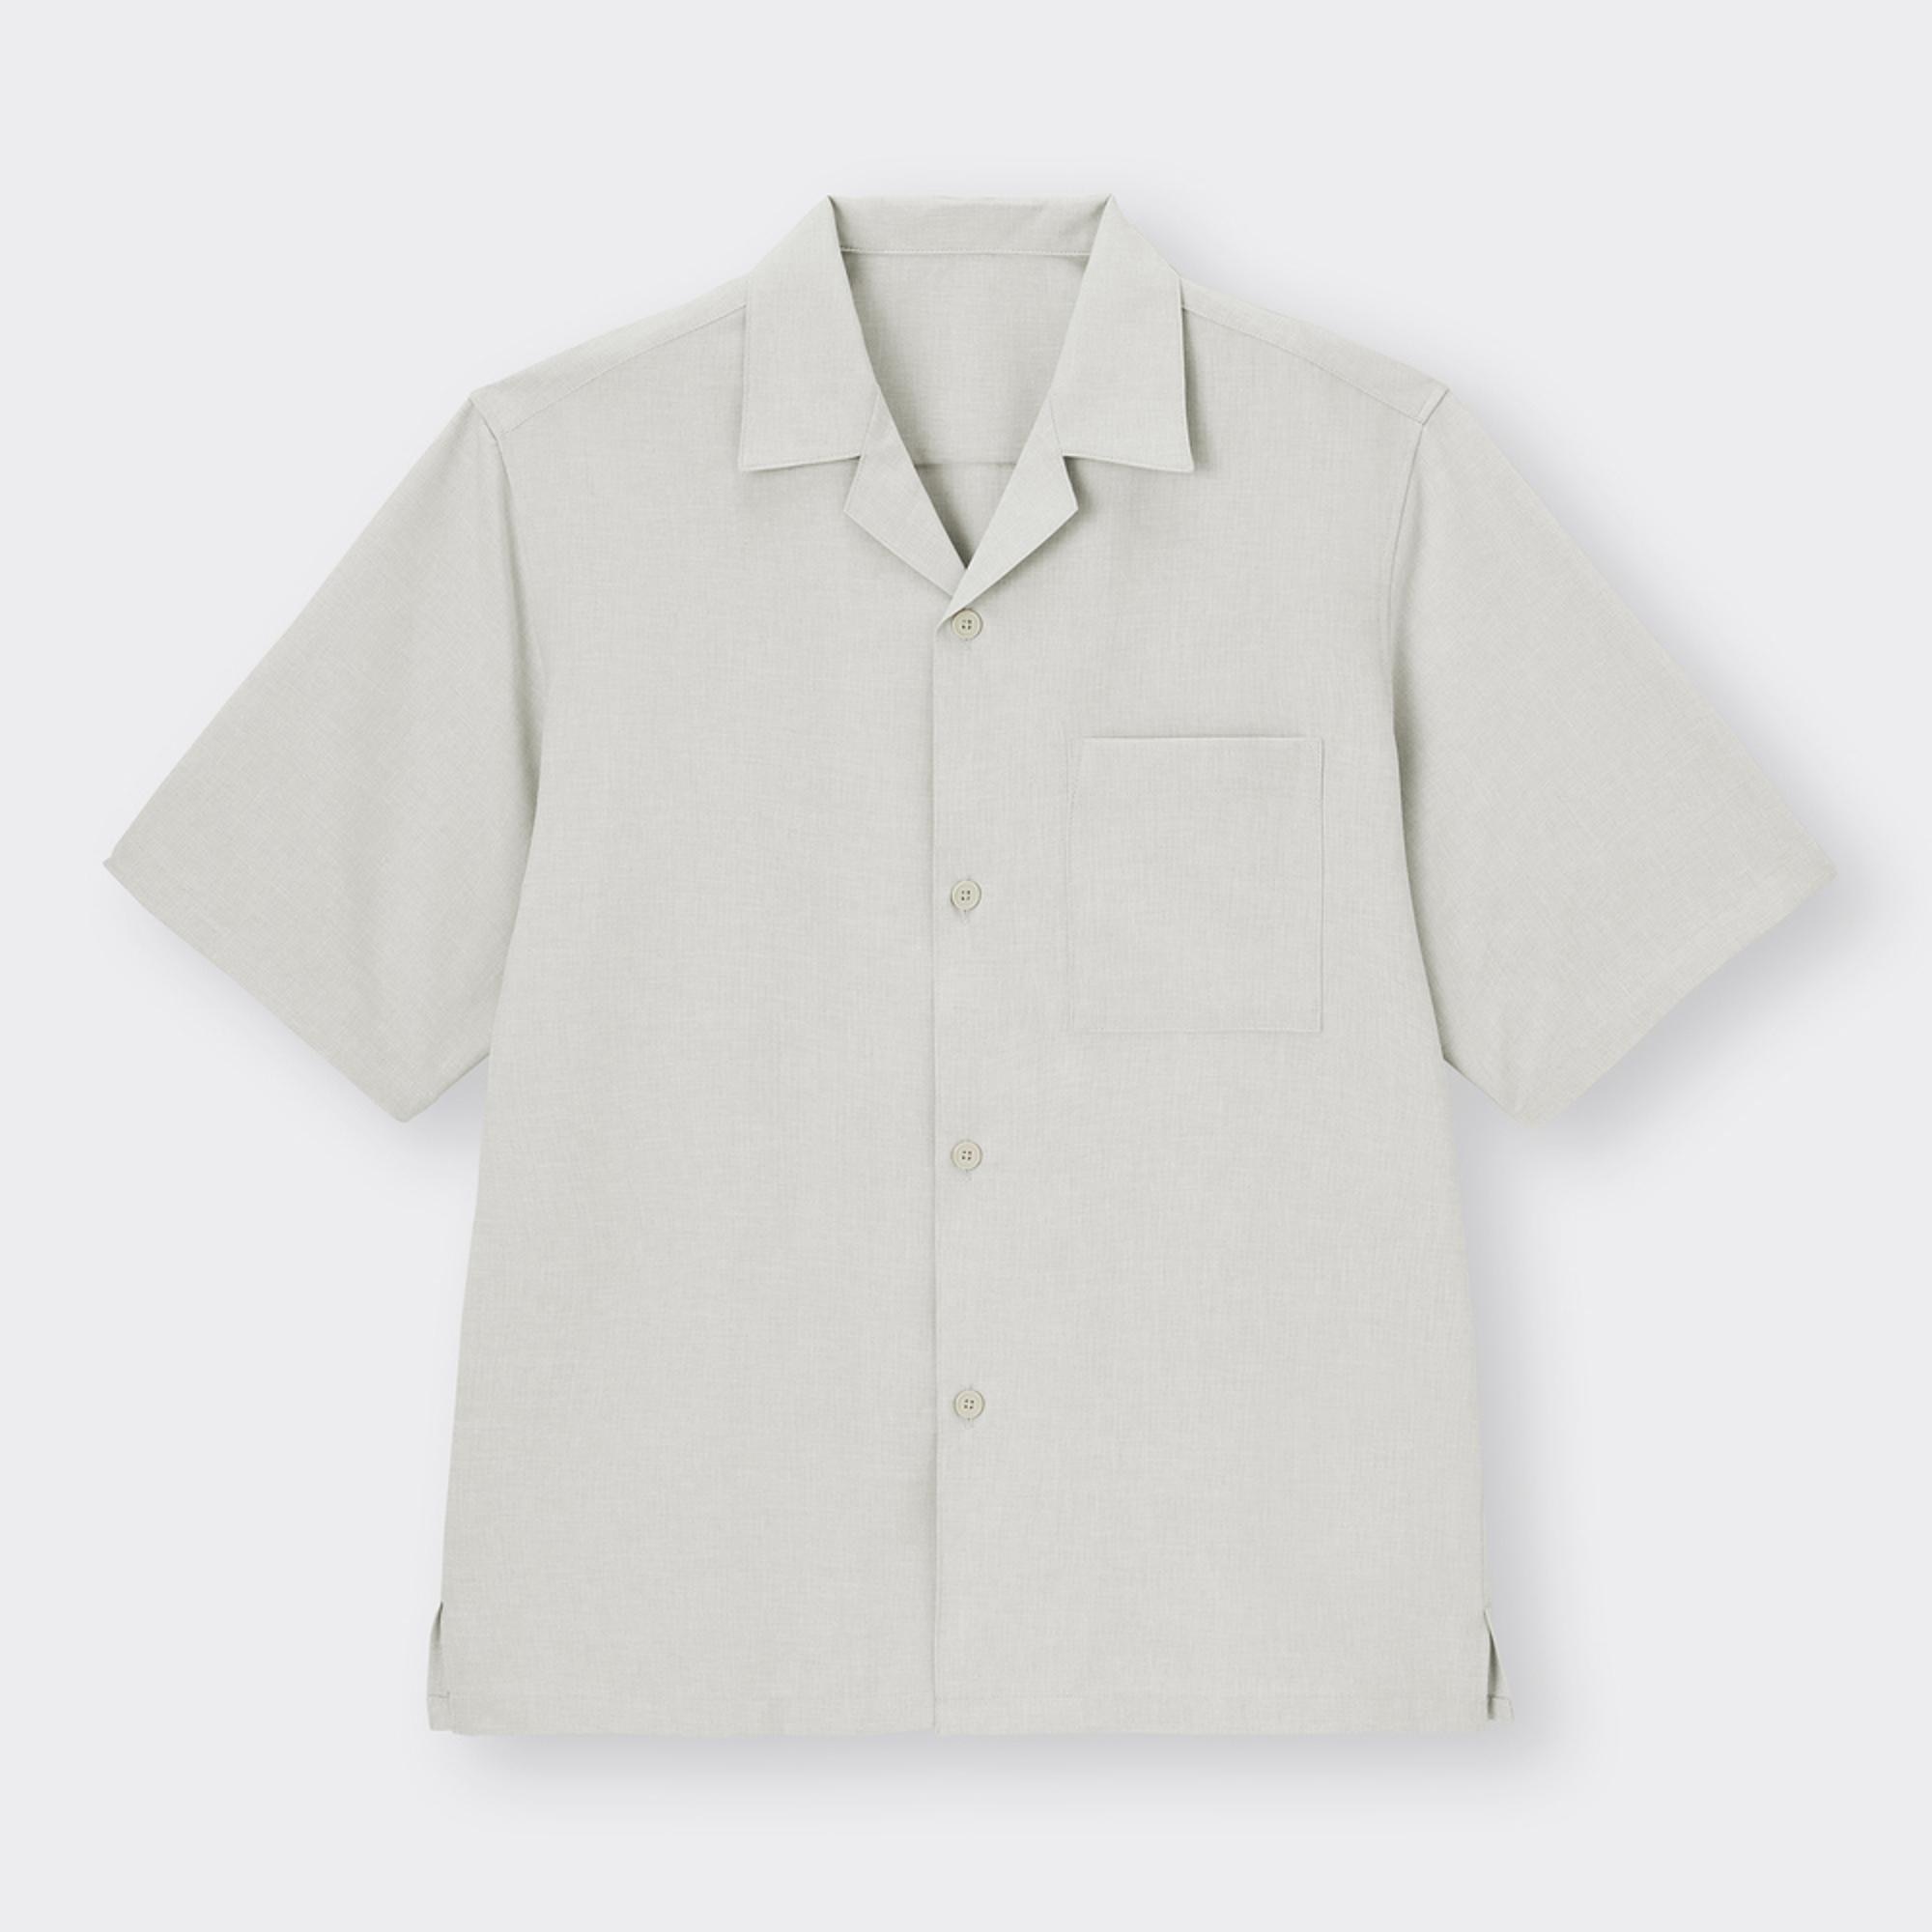 ドライオープンカラーシャツ(5分袖)(セットアップ可能)